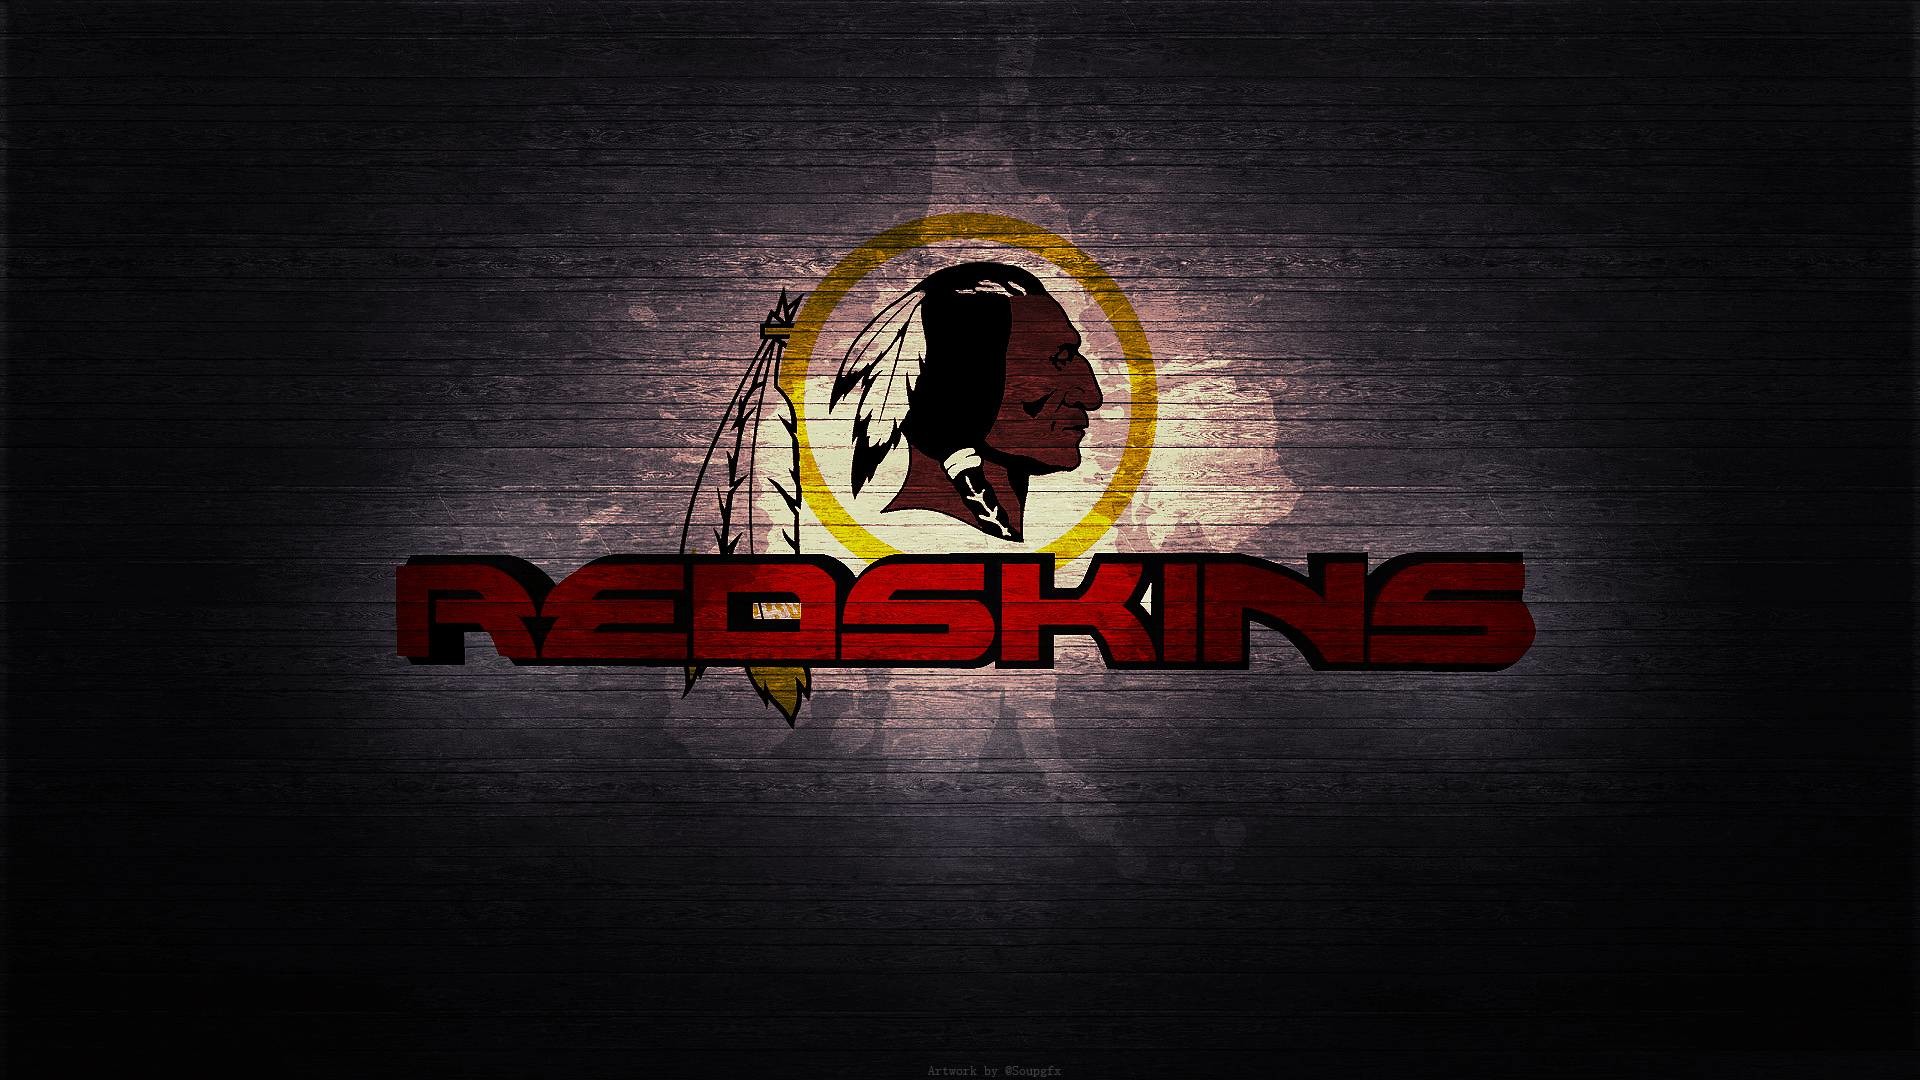 Washington Redskins Wallpaper Screensavers Image